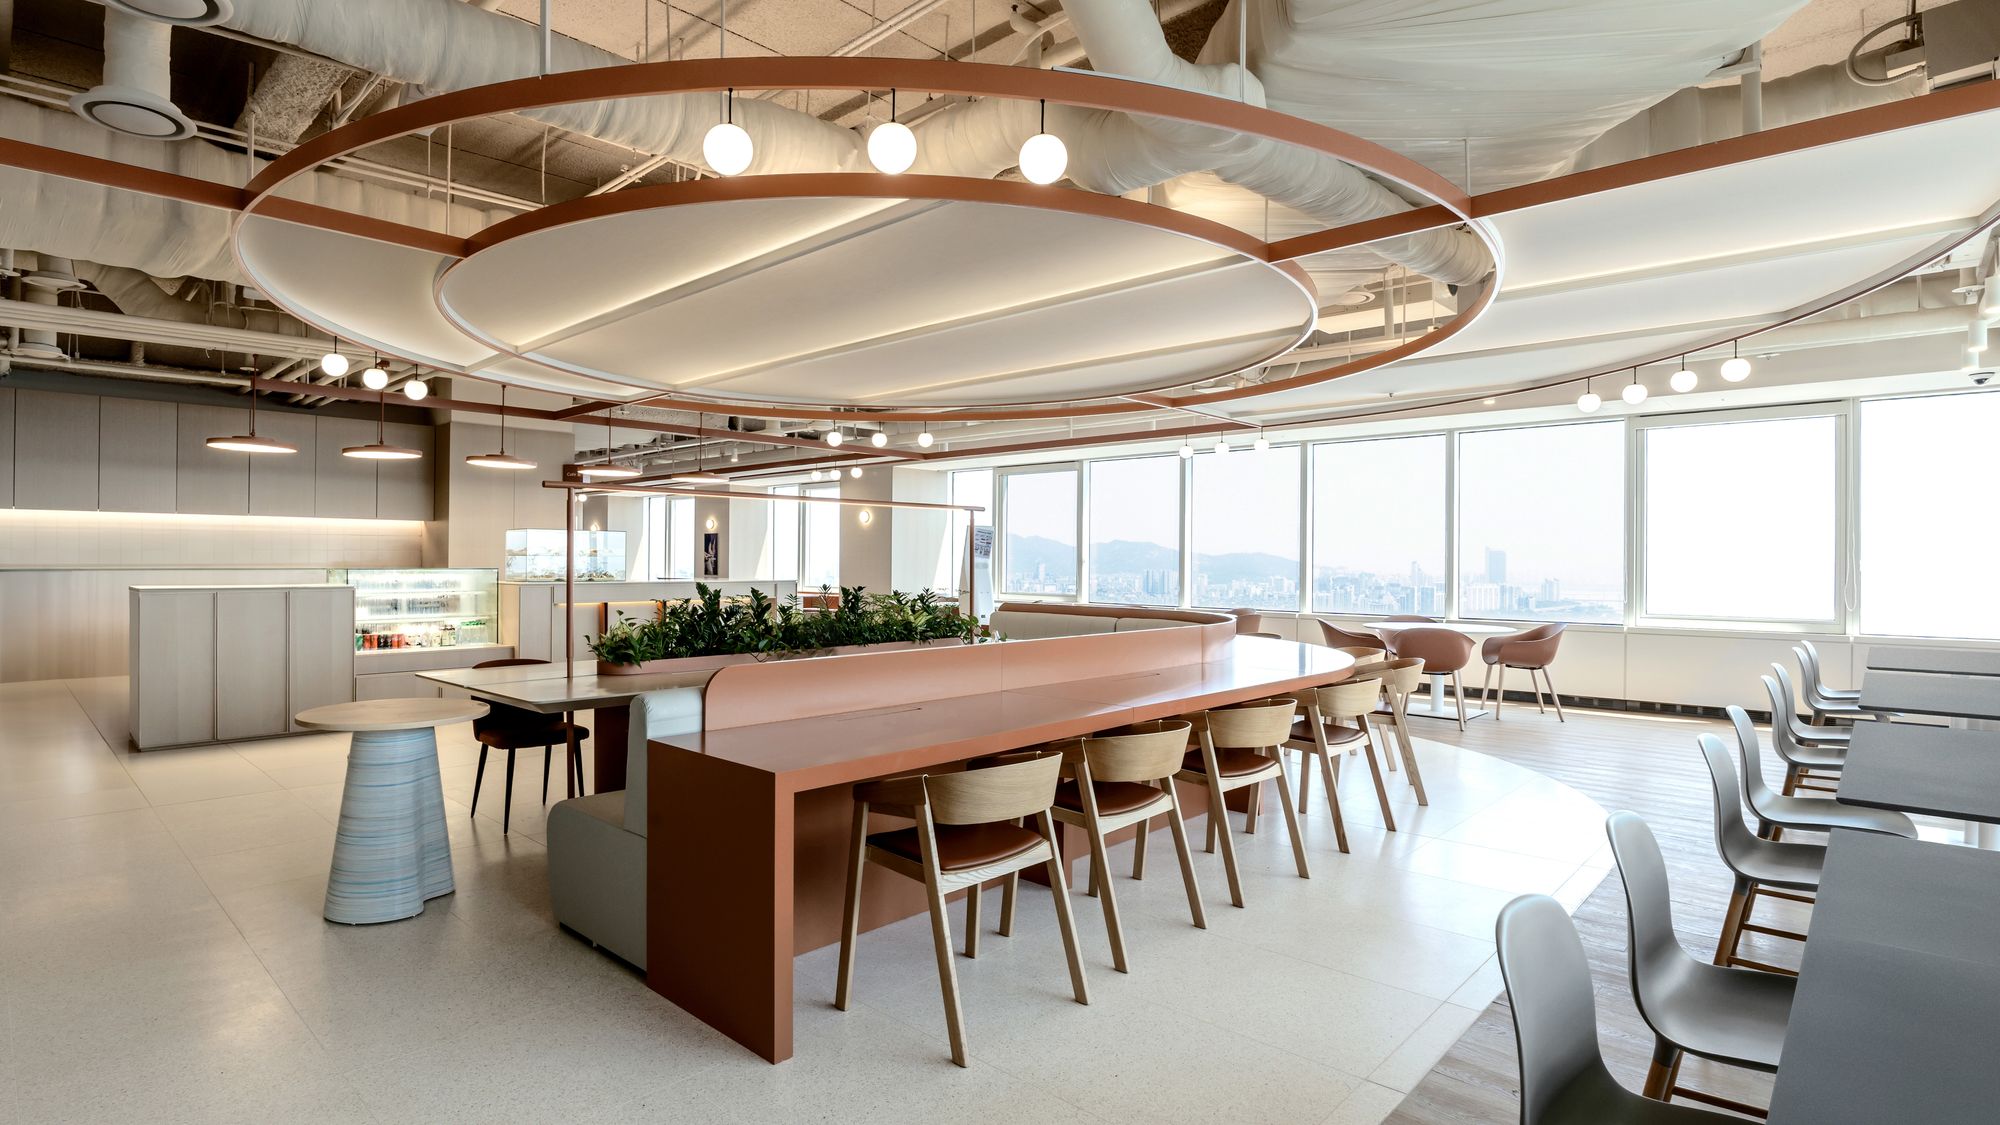 图片[8]|欧莱雅韩国办事处——首尔|ART-Arrakis | 建筑室内设计的创新与灵感